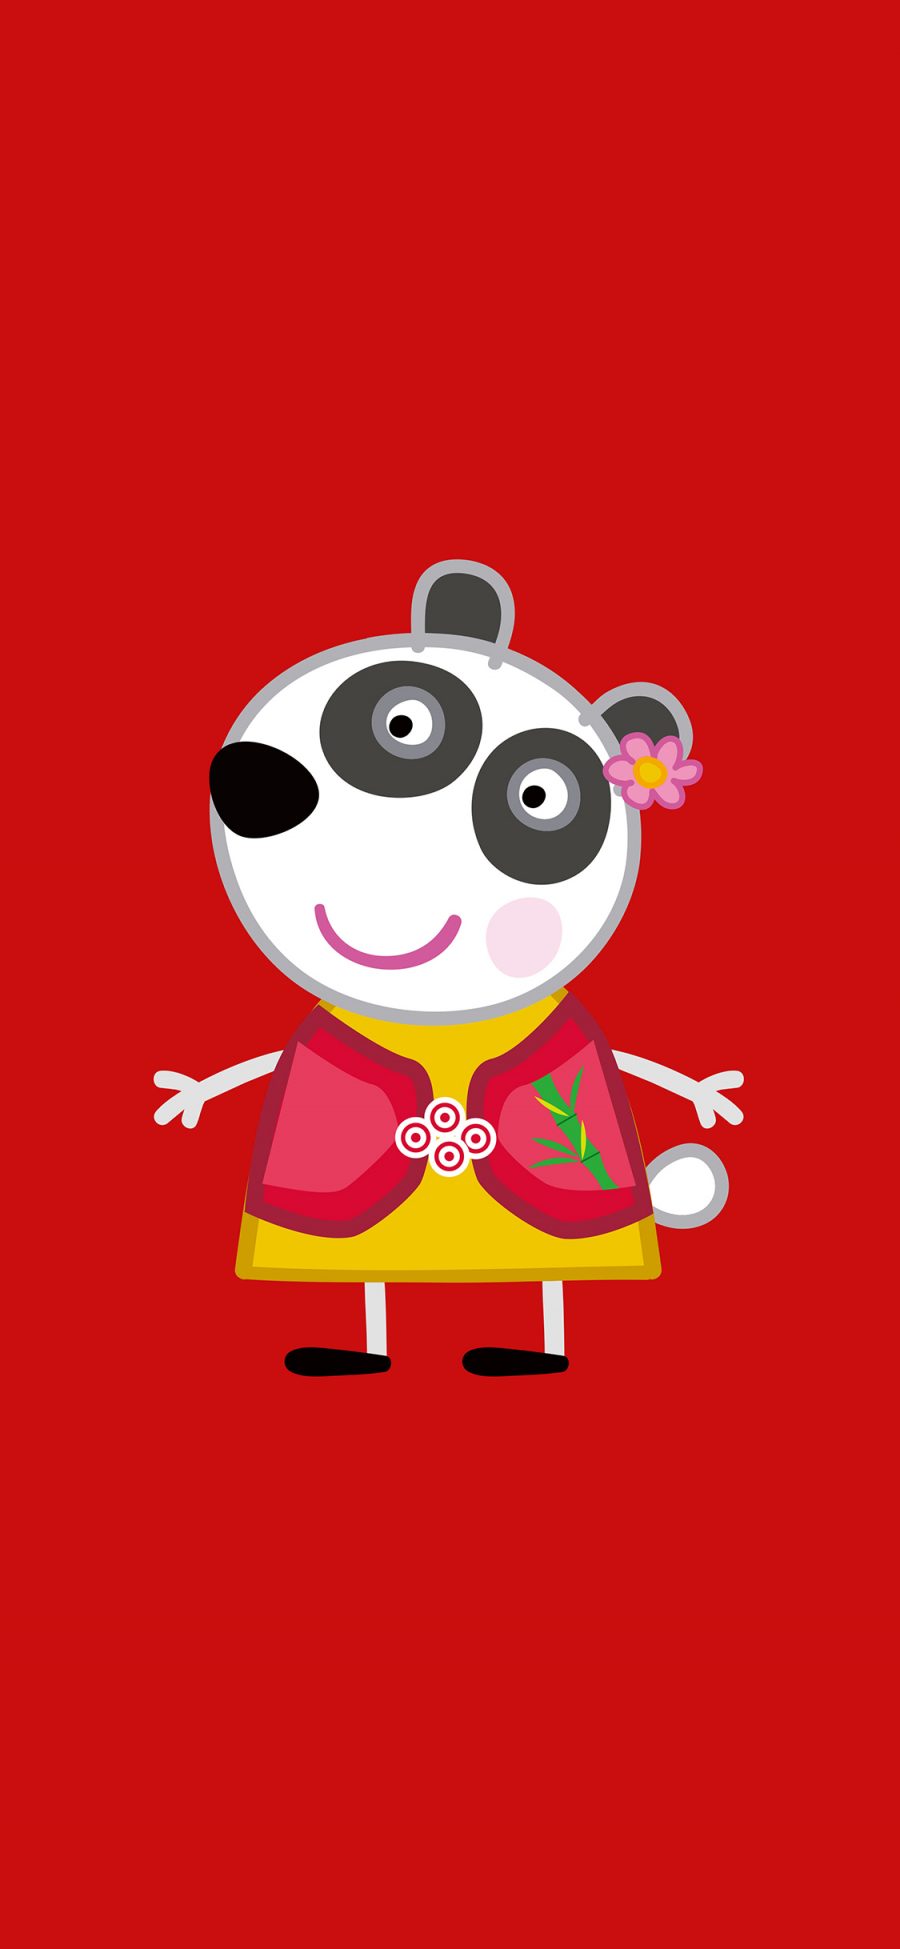 [2436×1125]小猪佩奇 熊猫 红色 动画 苹果手机动漫壁纸图片